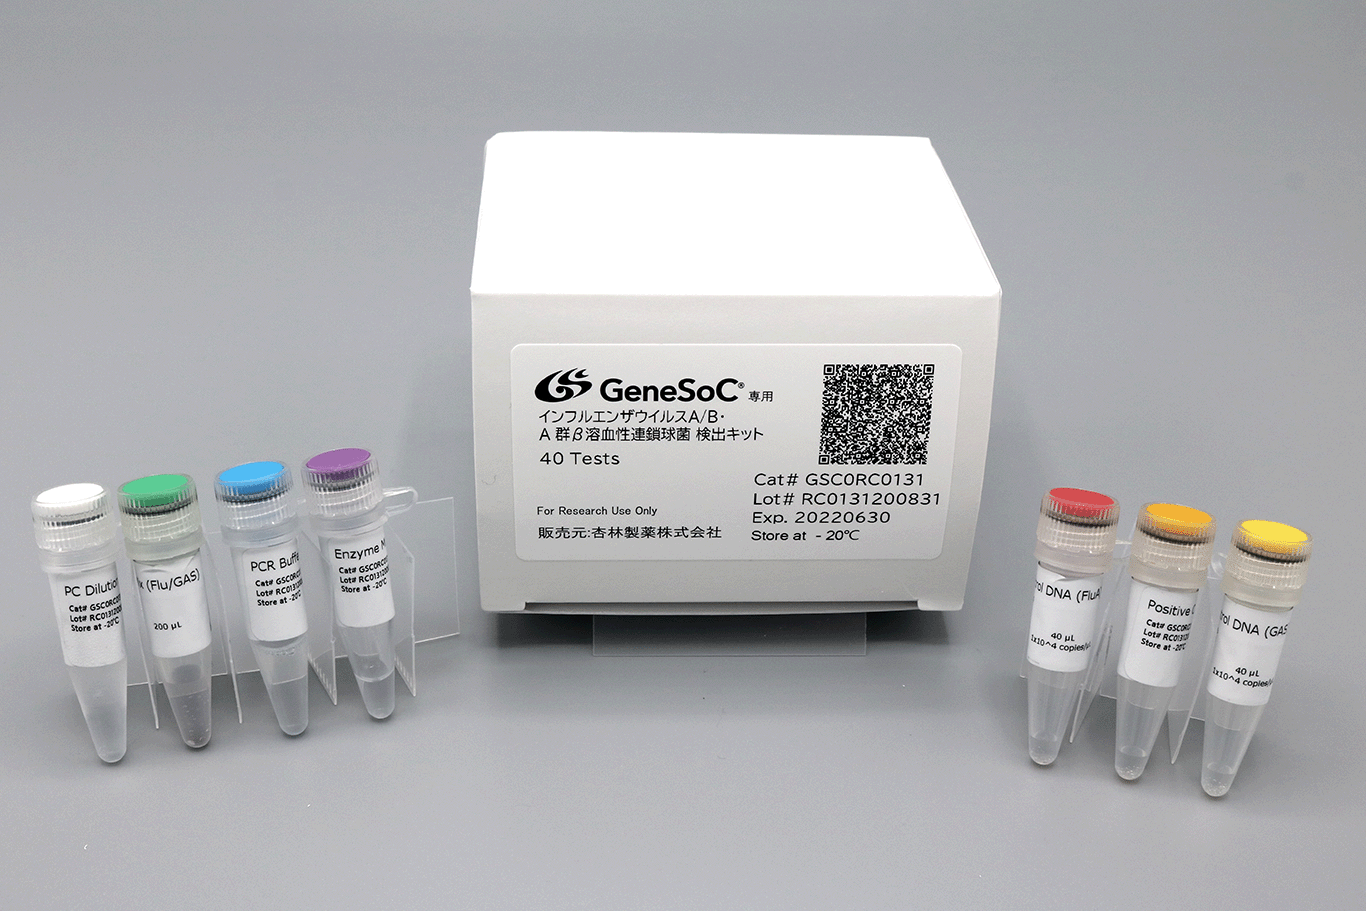 インフルエンザウイルスA/B・A群β溶血性連鎖球菌 検出キット